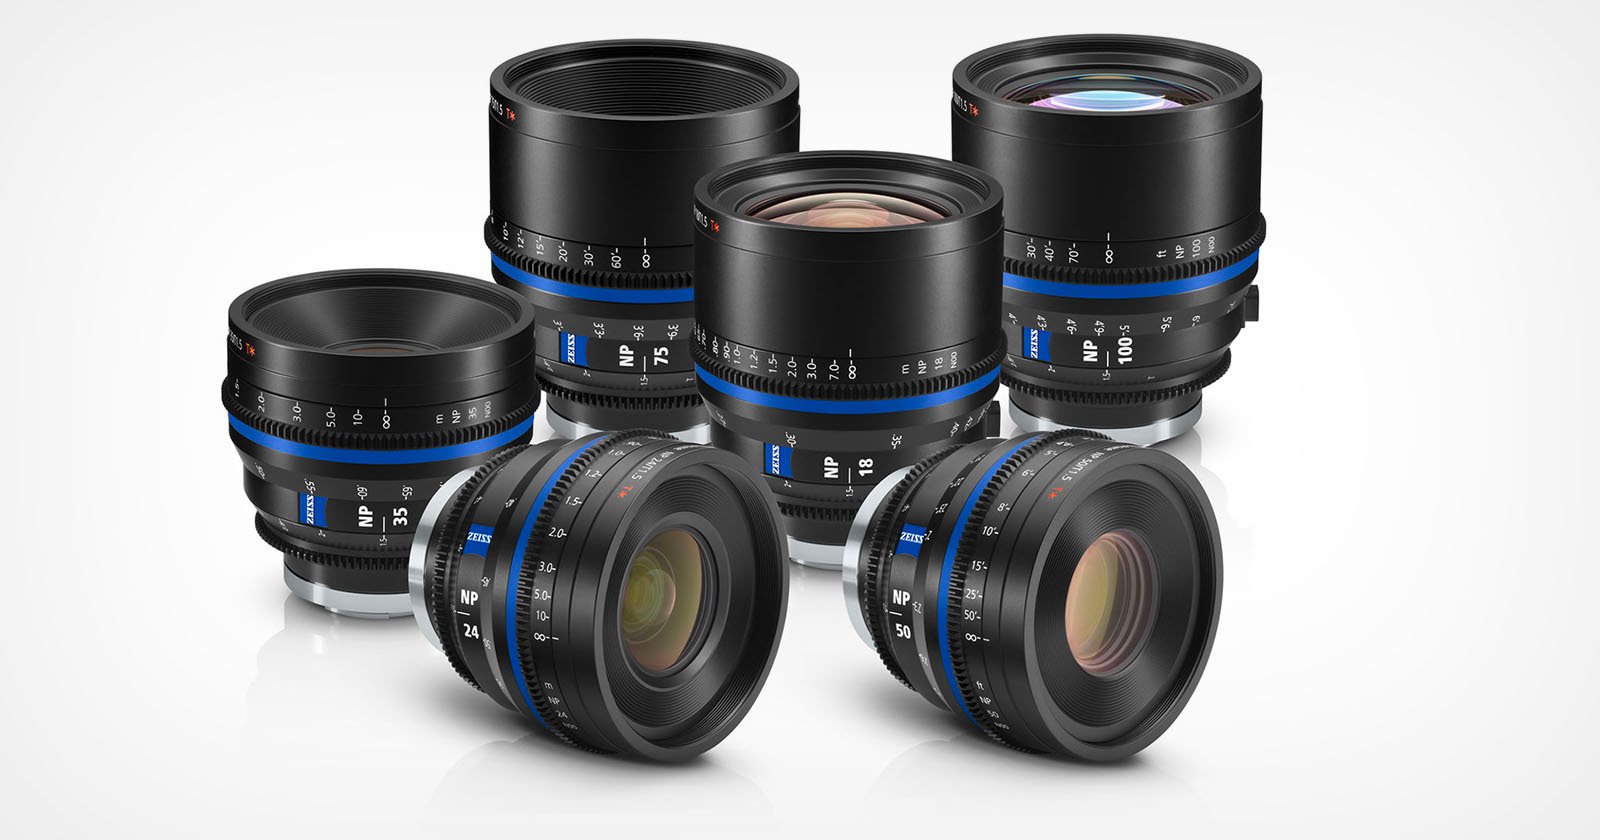  zeiss nano prime full-frame cine lenses range 